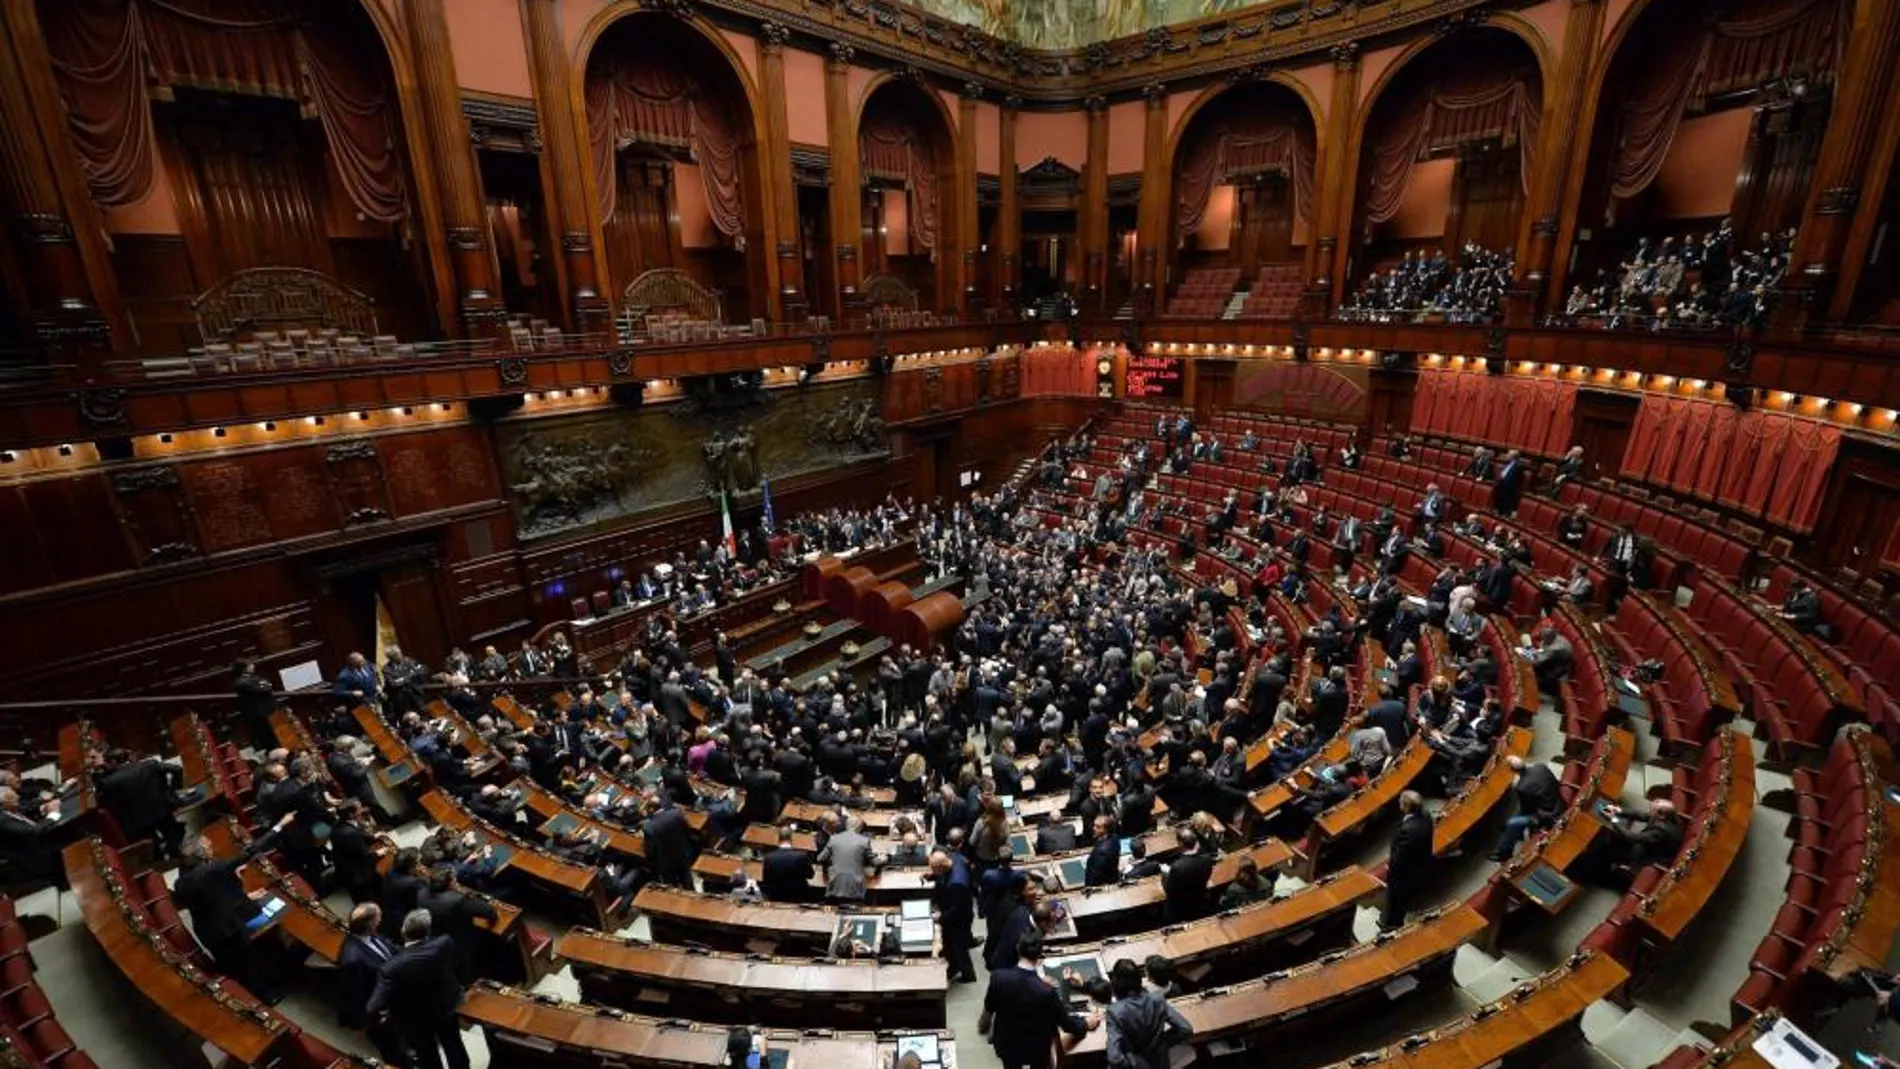 Vista general del Parlamento italiano, donde se celebraba la votación para elegir al nuevo presidente.